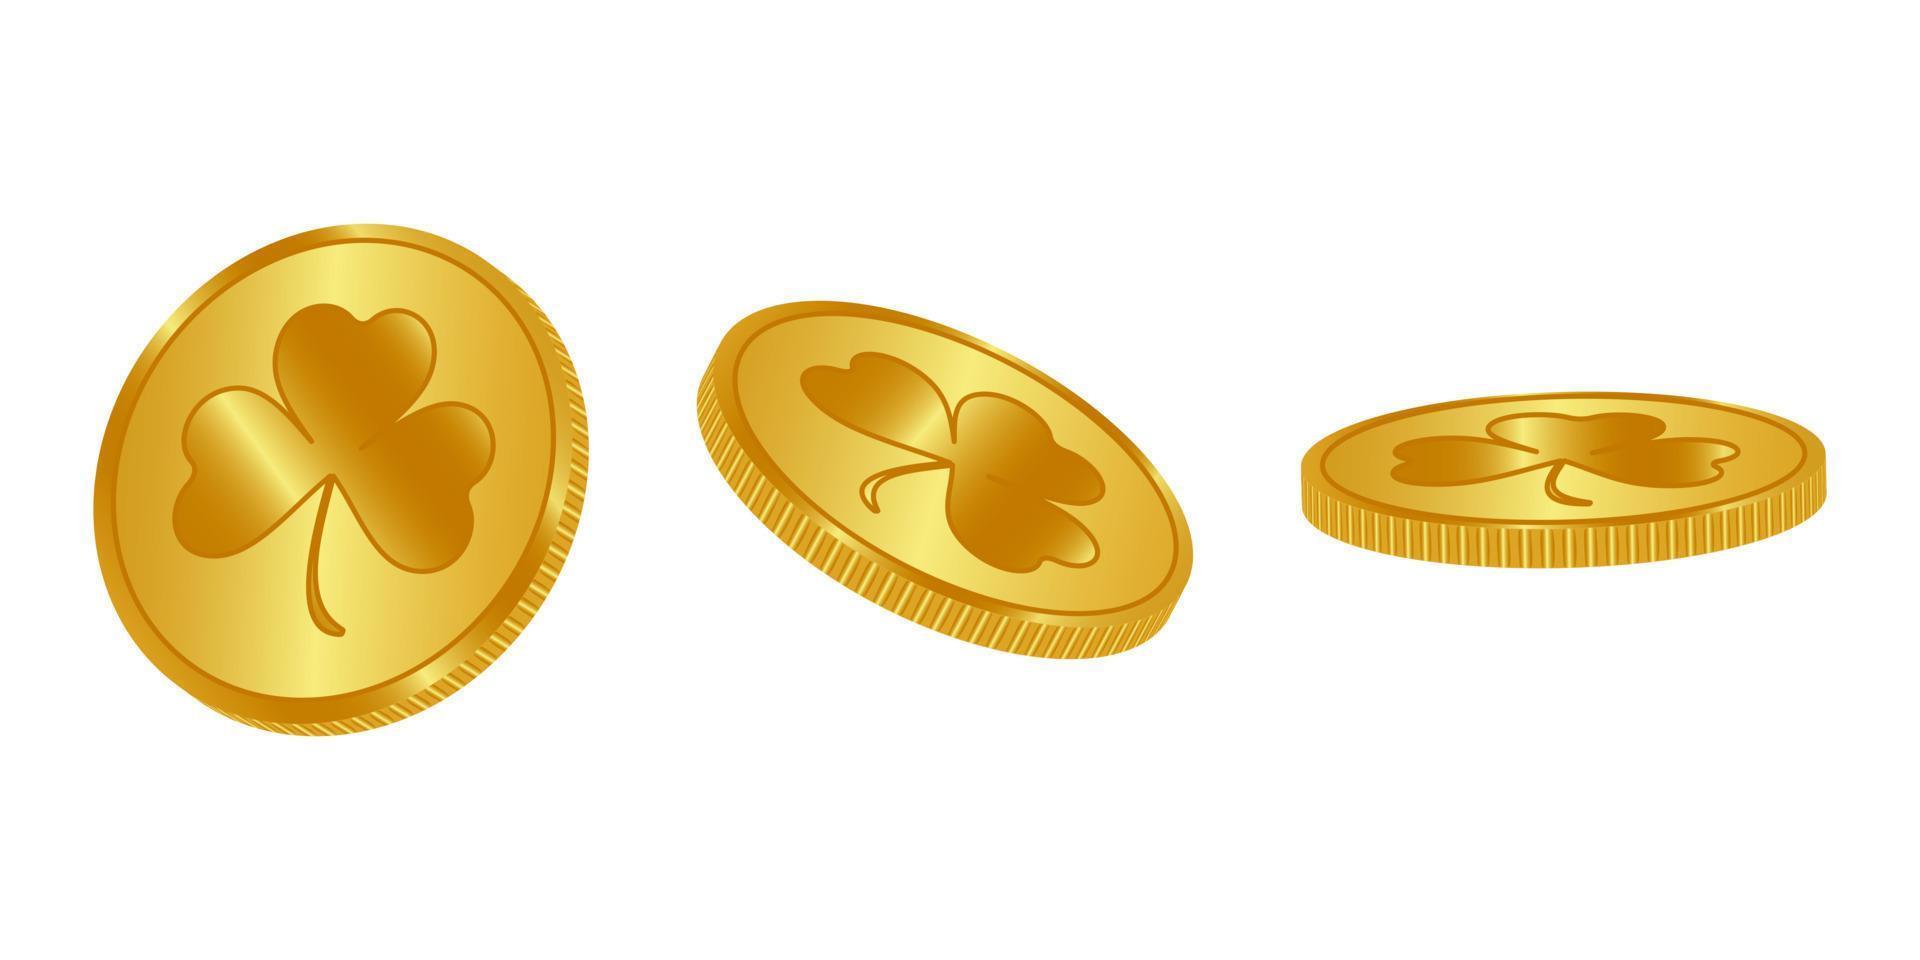 goldmünzen mit kleeblatt isoliert auf weiß in verschiedenen positionen. Münzen mit Kleeblatt. Vektor-Illustration. vektor